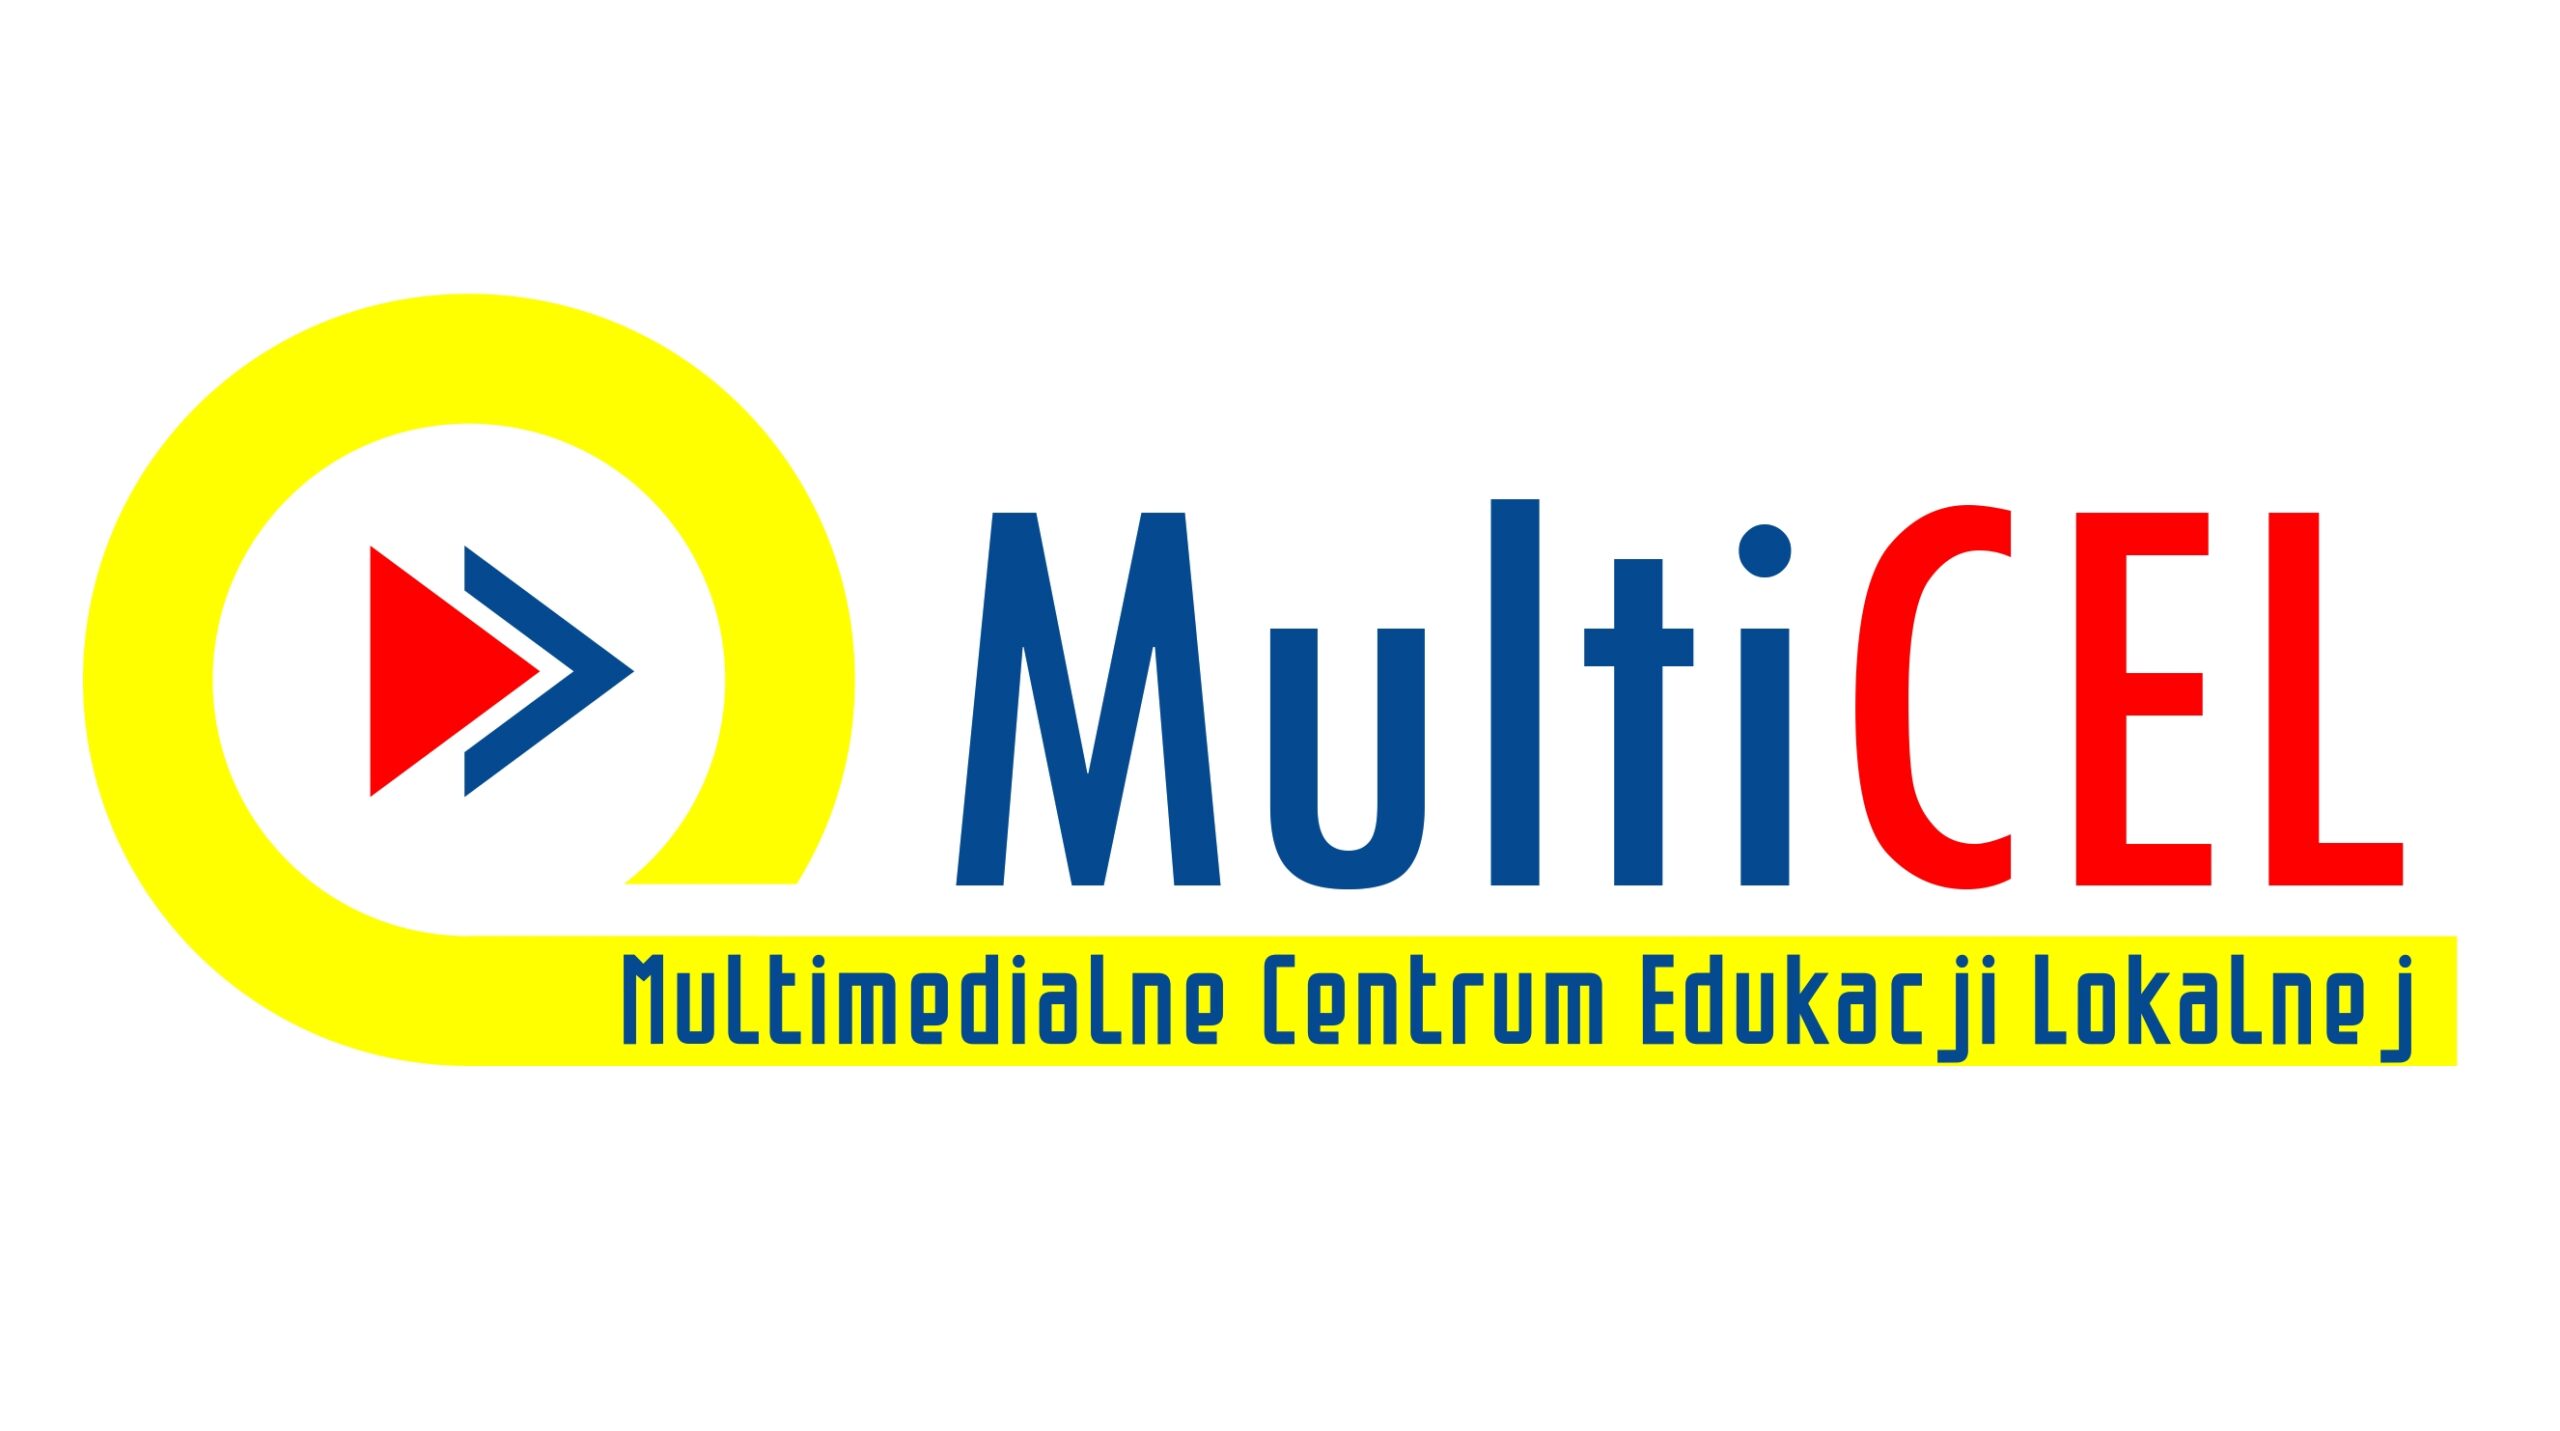 Zapisy na szkolenie w MultiCel – orkiestra dęta lokalną marką